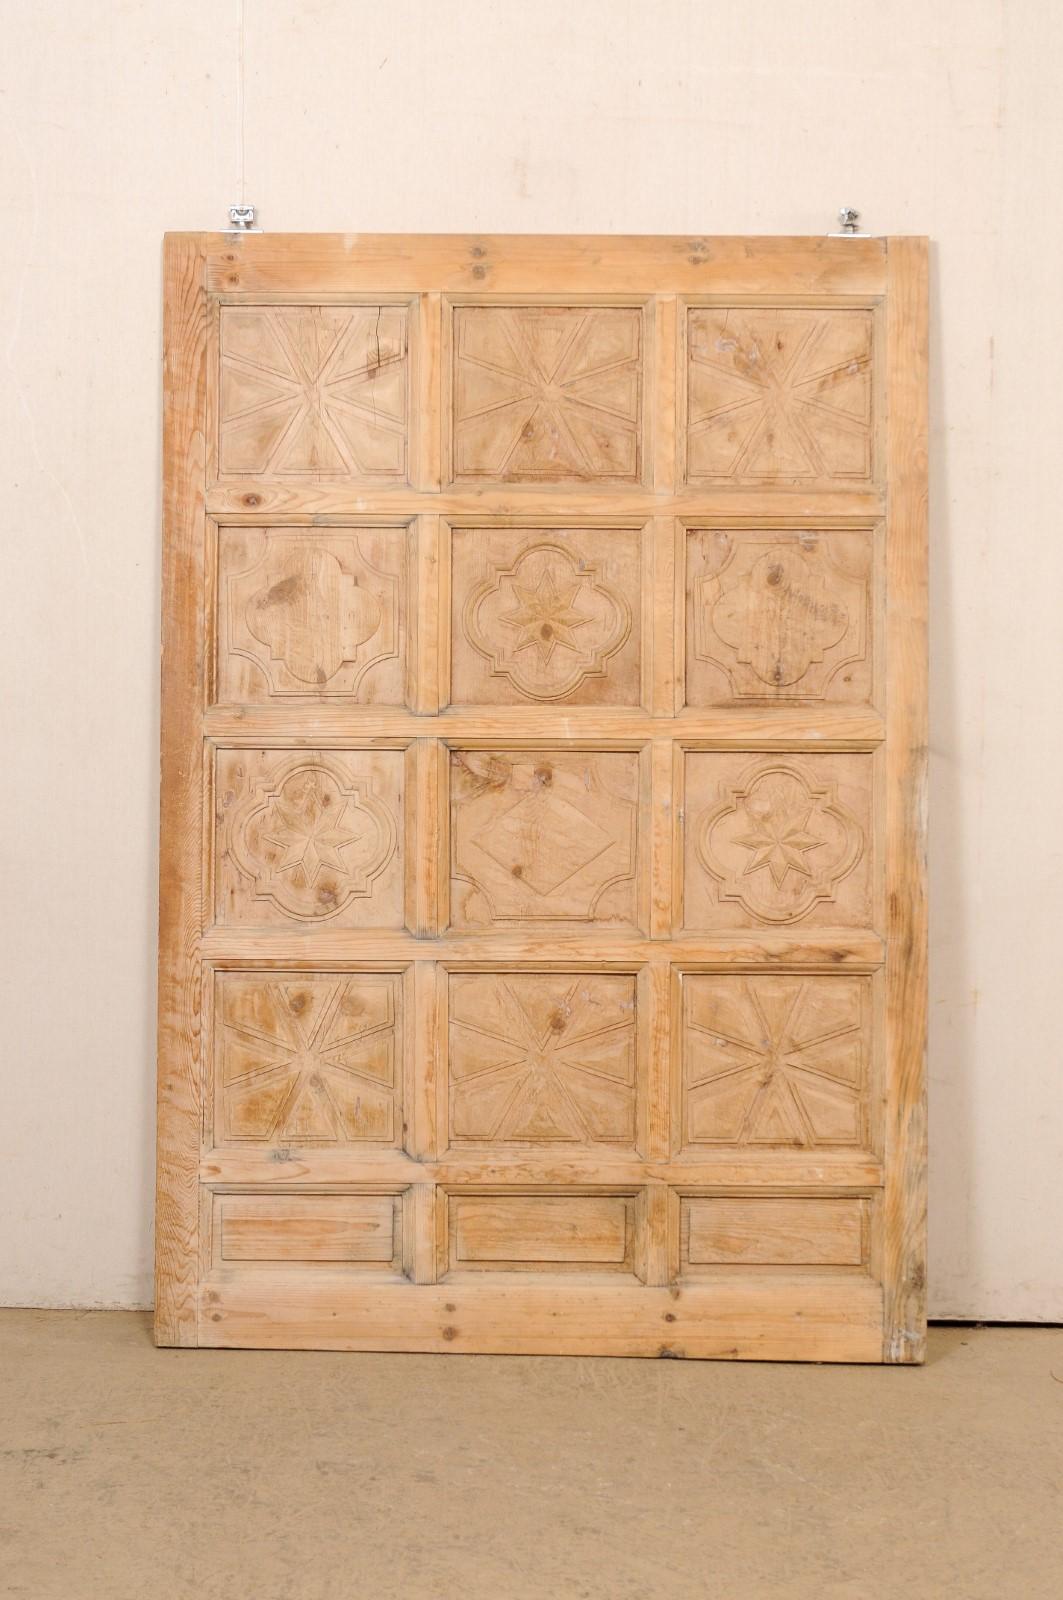 Porte espagnole en bois de grande taille, décorativement sculptée et à panneaux surélevés. Cette porte en bois vintage d'Espagne est ornée de 15 panneaux en relief, avec trois rangées de panneaux en largeur et cinq en profondeur. Chacune des quatre